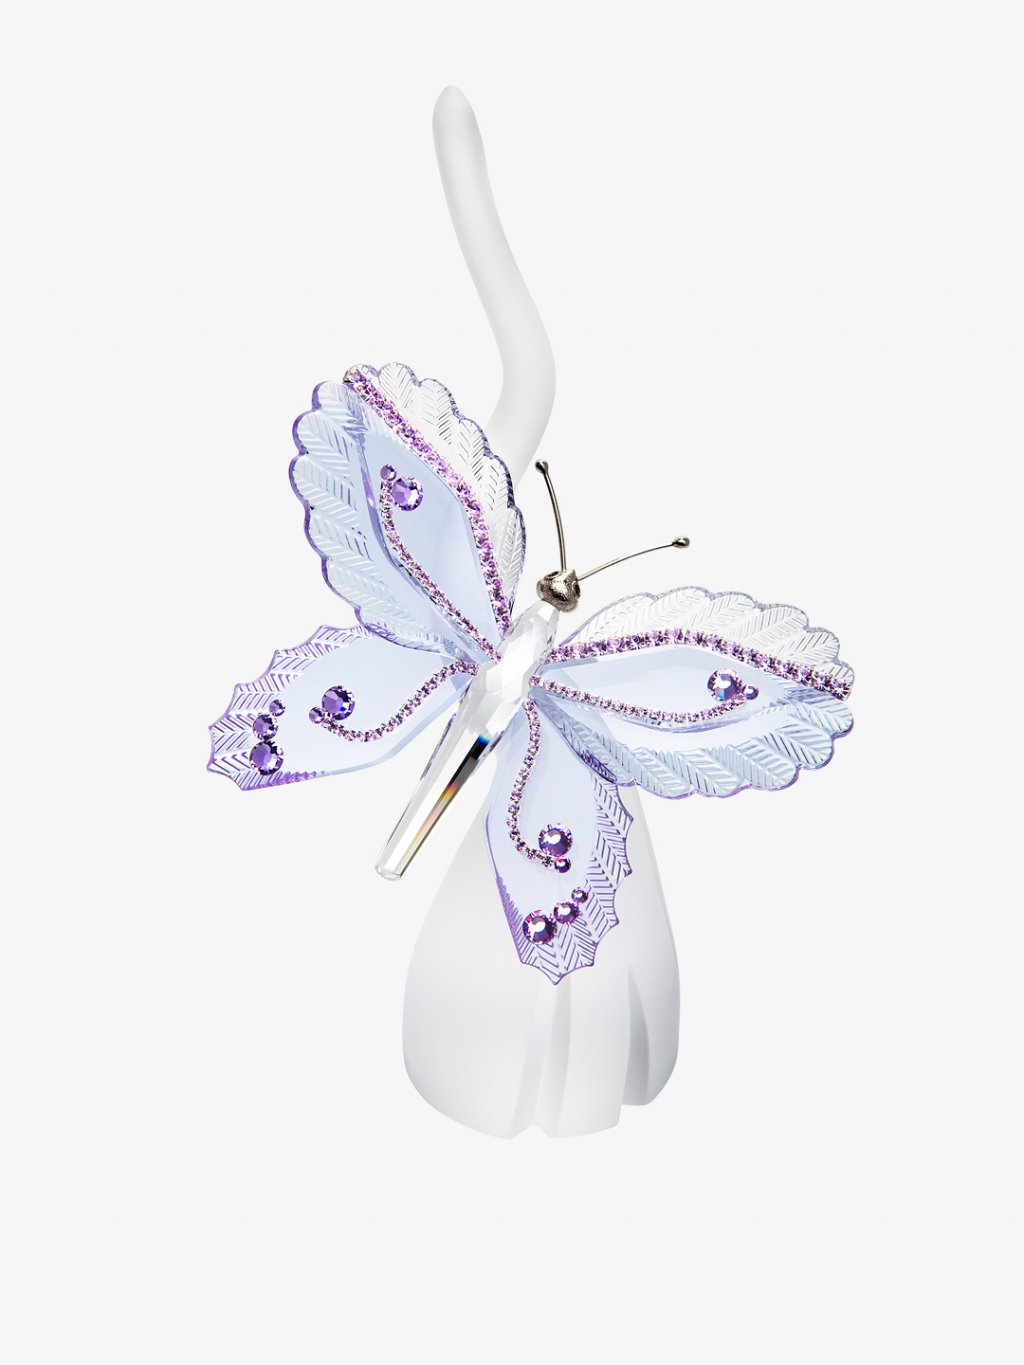 Skleněná figurka Symbol štěstí s motivem motýla z českého křišťálu Preciosa